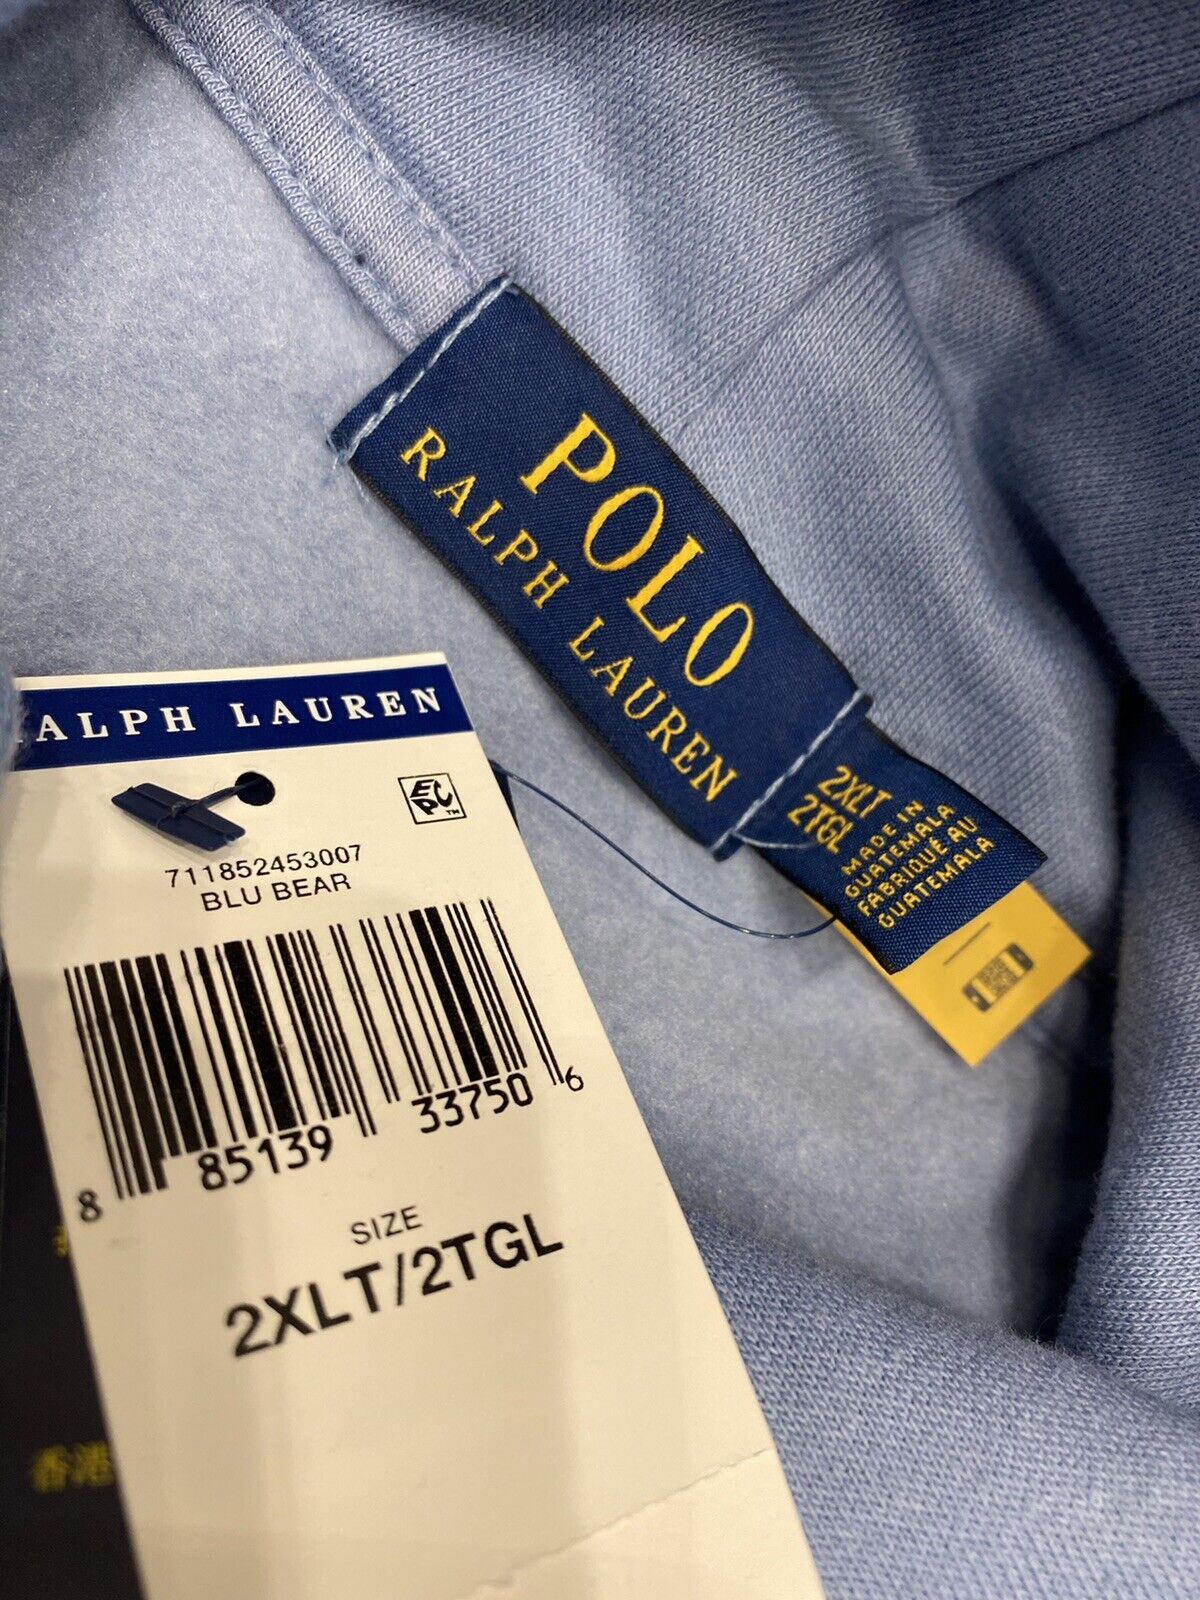 Новый свитер с медвежонком и длинными рукавами Polo Ralph Lauren за 188 долларов и синяя толстовка 2XLT/2TGL 